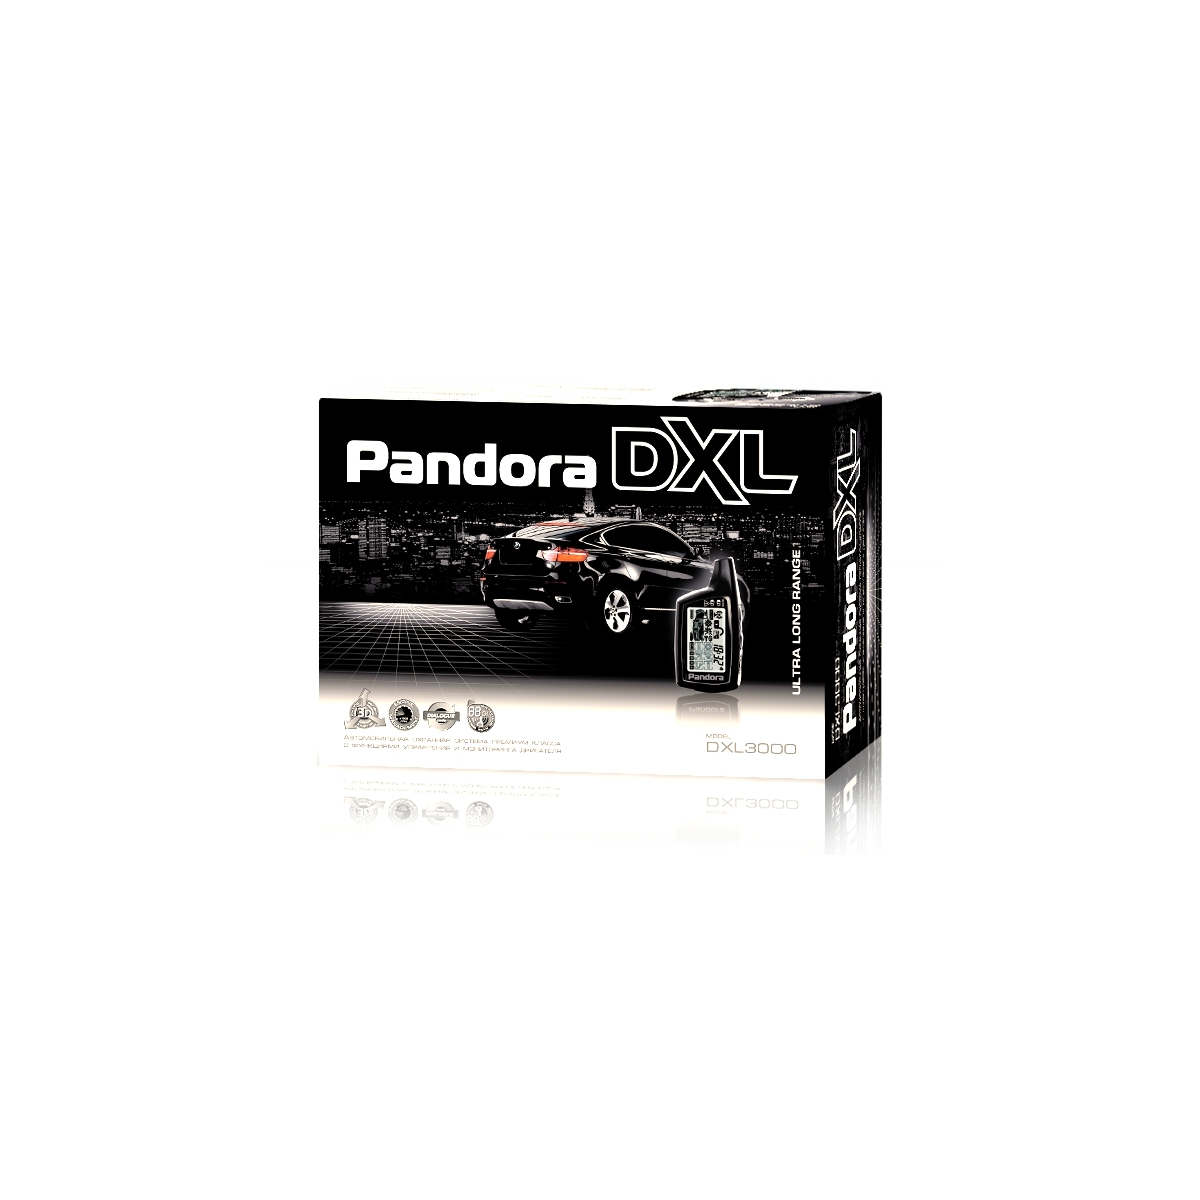 Pandora dxl 3000. Pandora DXL 3000 I. Pandora DXL 3000i Mod. Pandora DXL 3000 USB.